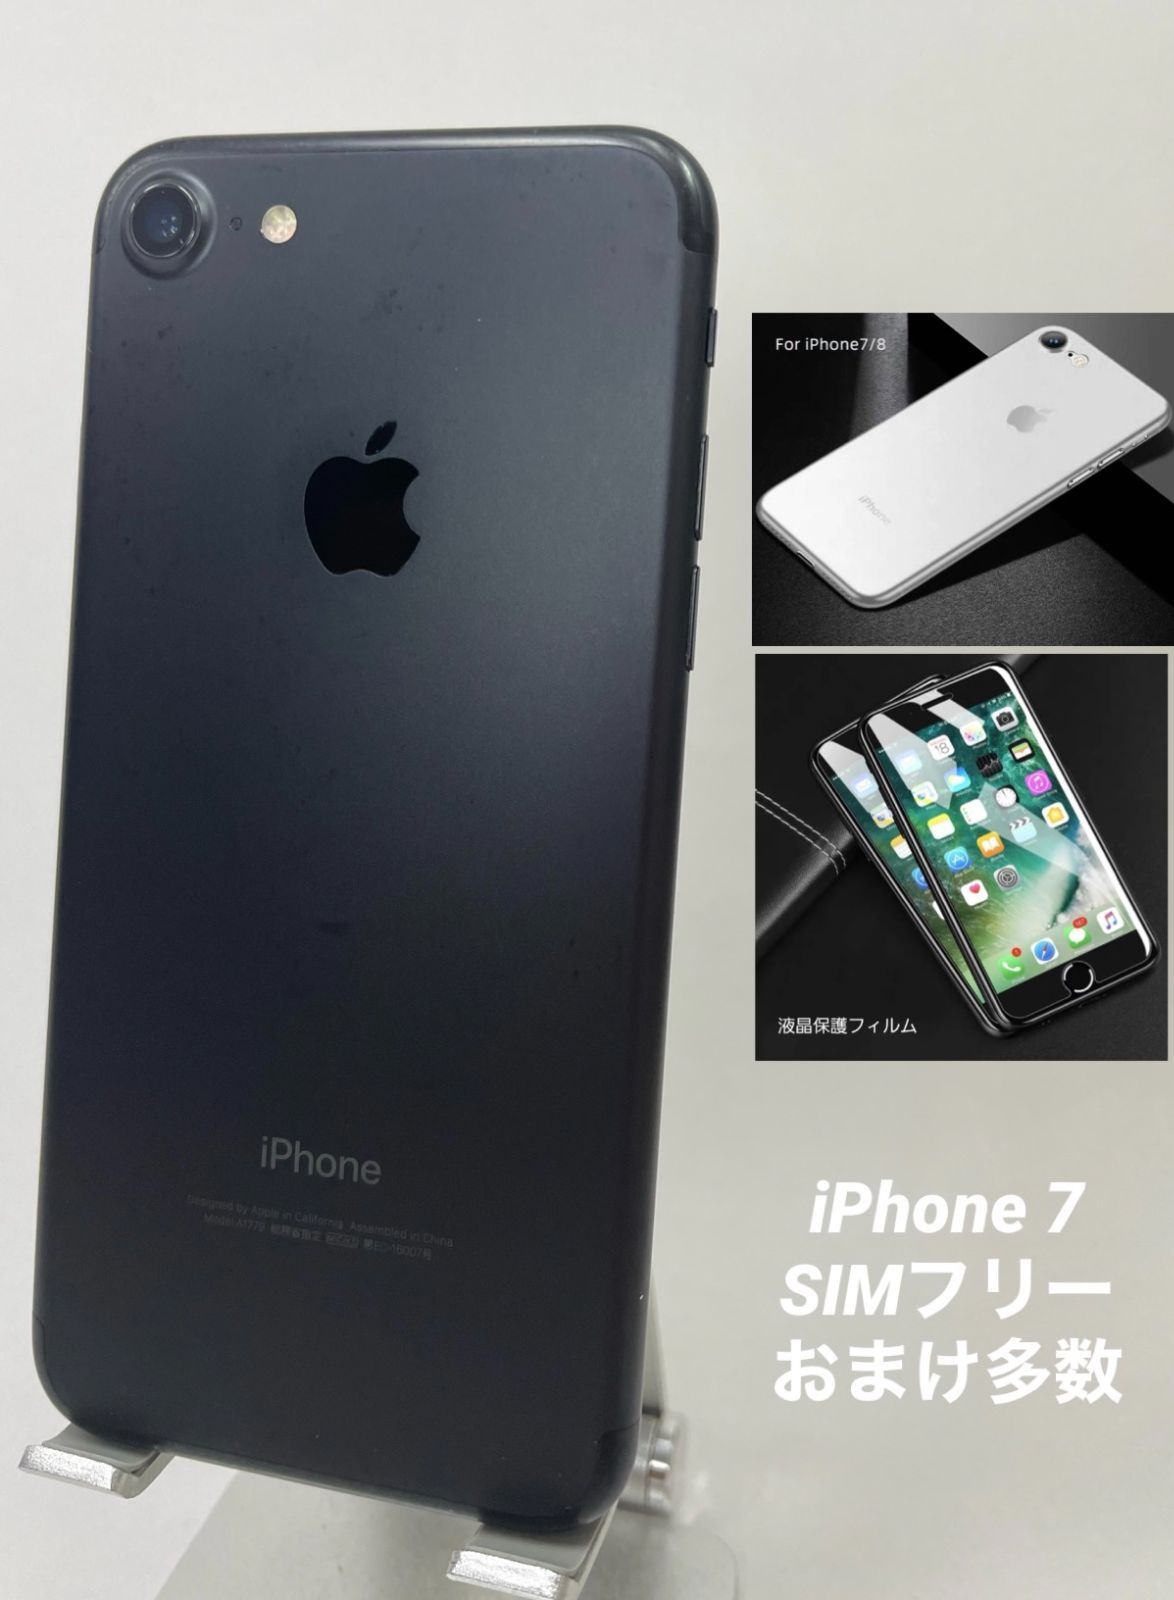 安い超激得バッテリー80%以上 iPhone7 32GB ブラック 中古 SIMフリー SIMロック解除済 格安SIM対応 iPhone